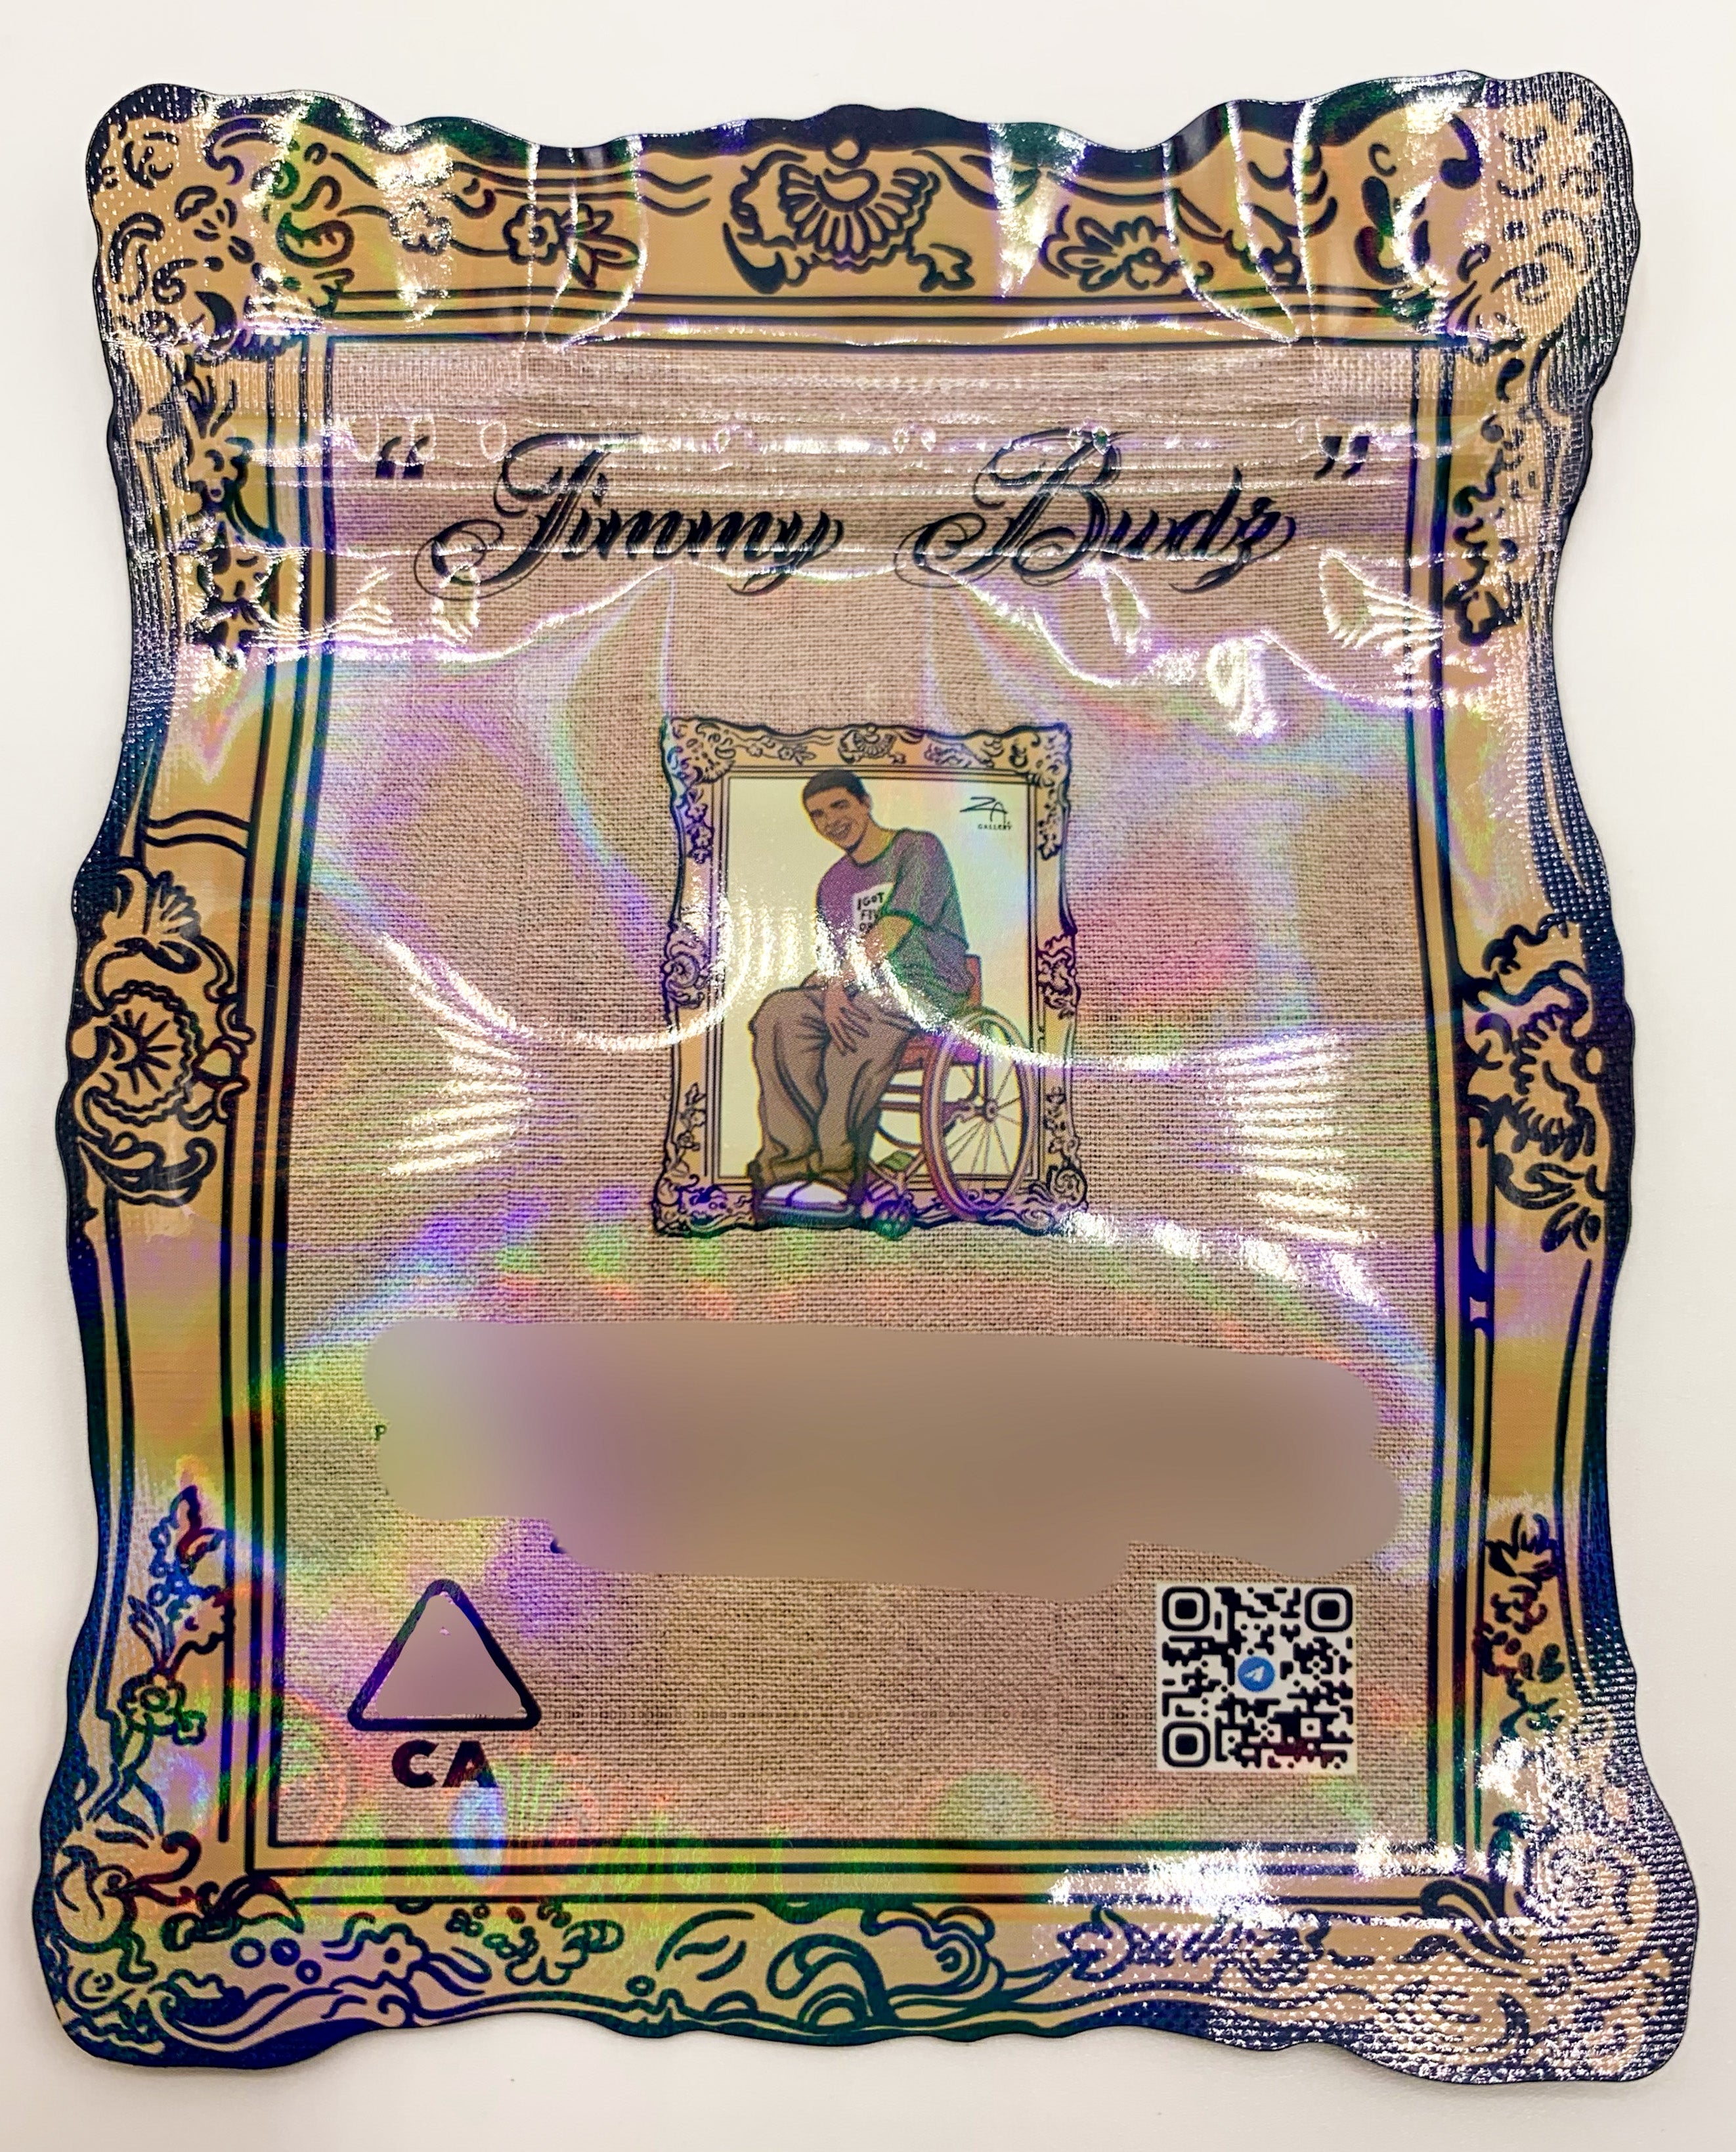 3D ZA Gallery OG Jimmy Budz 3.5g Mylar Bags